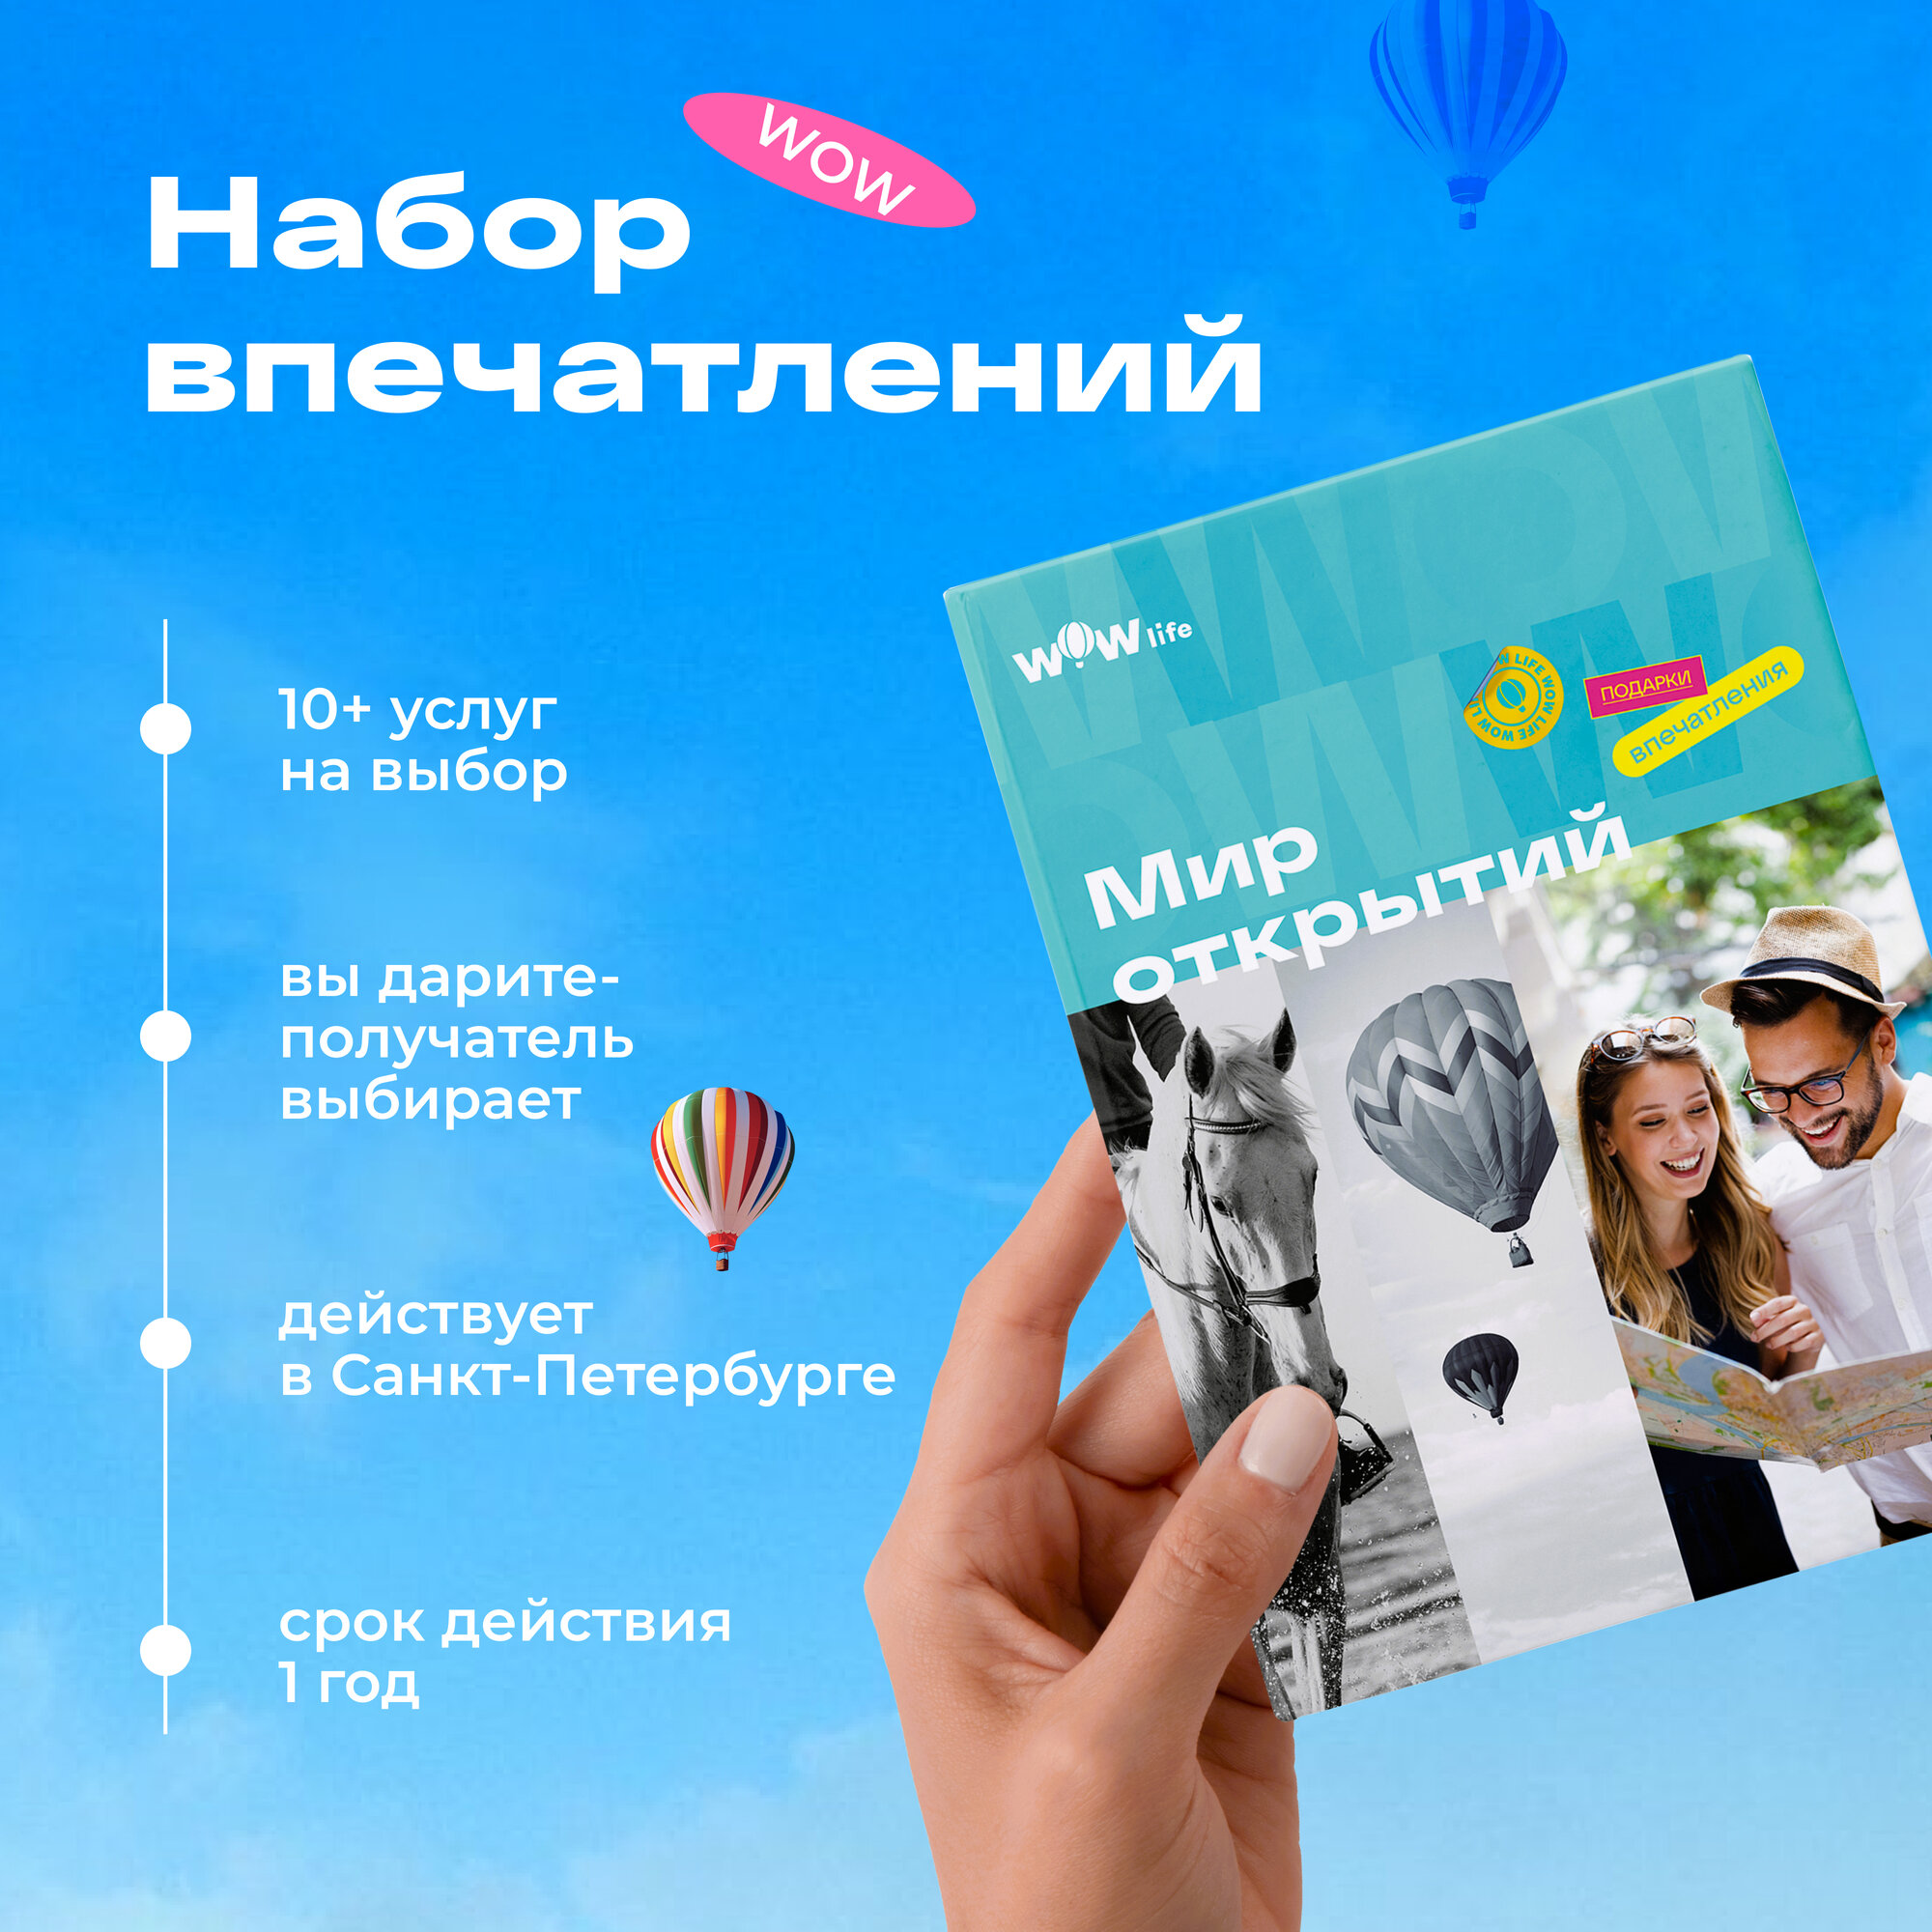 Подарочный сертификат WOWlife "Мир открытий" - набор из впечатлений на выбор, Санкт-Петербург